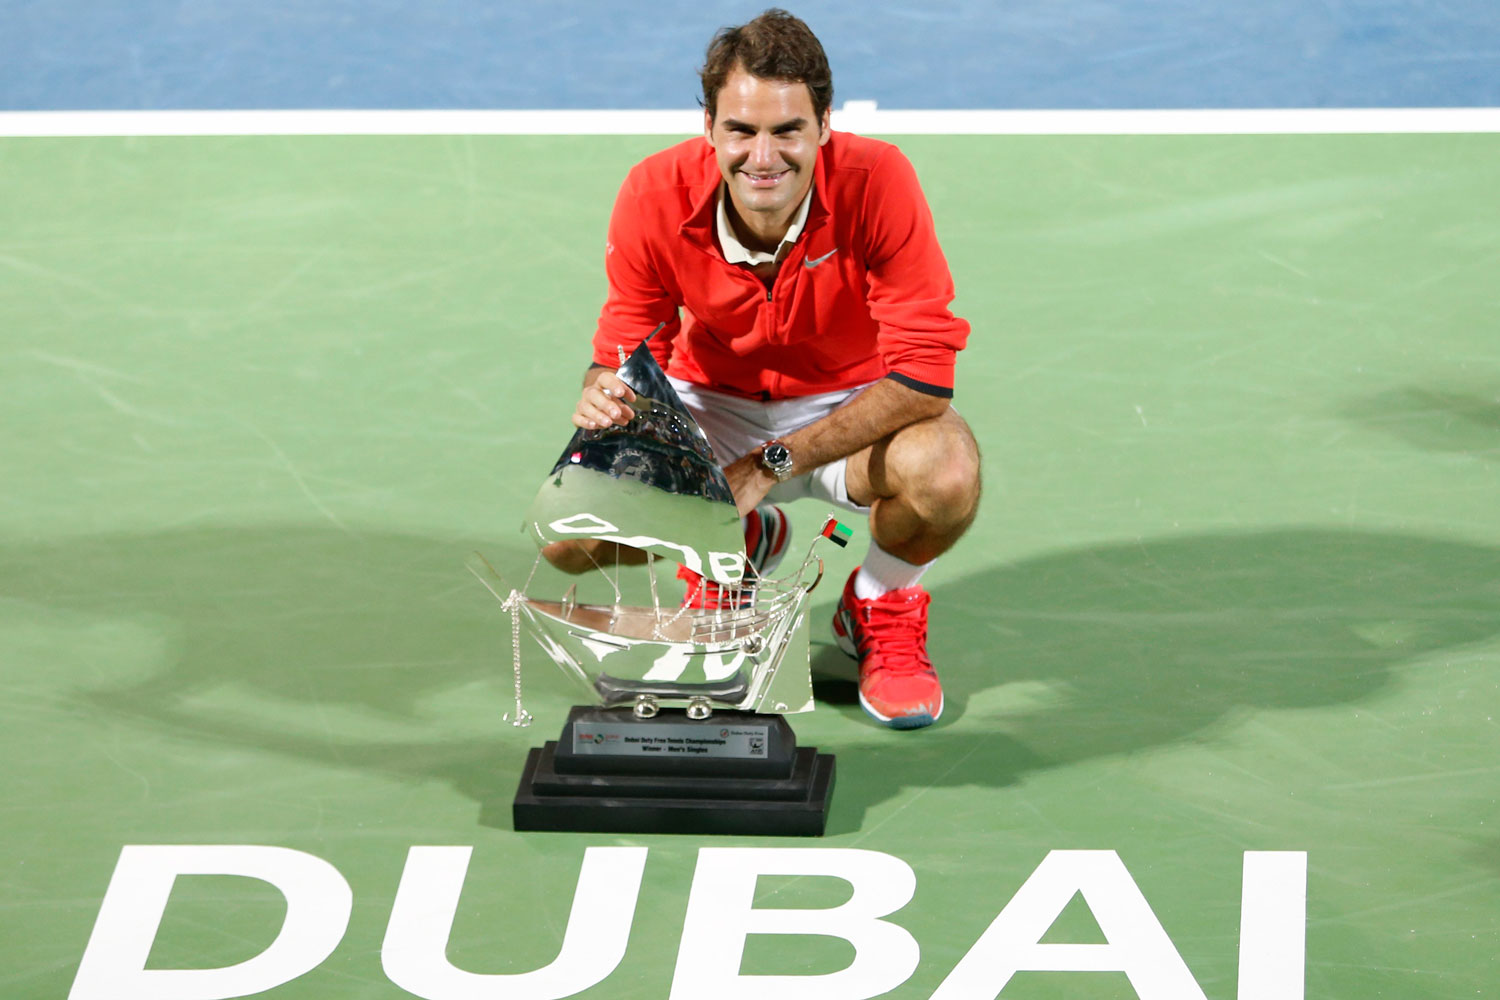 Federer consigue su sexto título en Dubai mientras que Dimitrov vence el Abierto de México